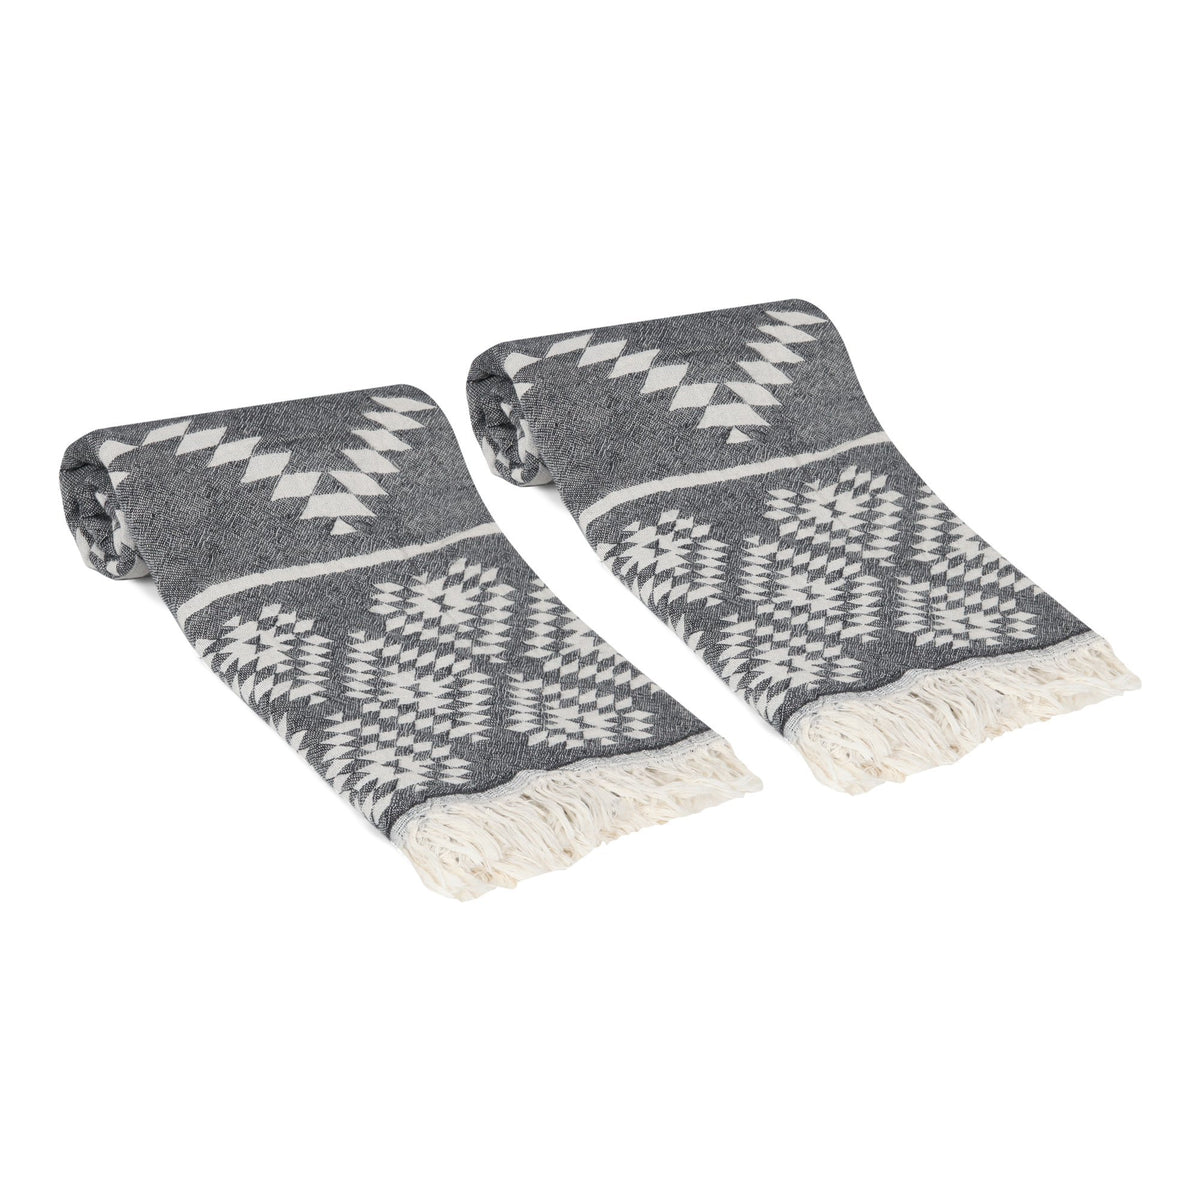 Aztec Turkish Hand / Kitchen Towel